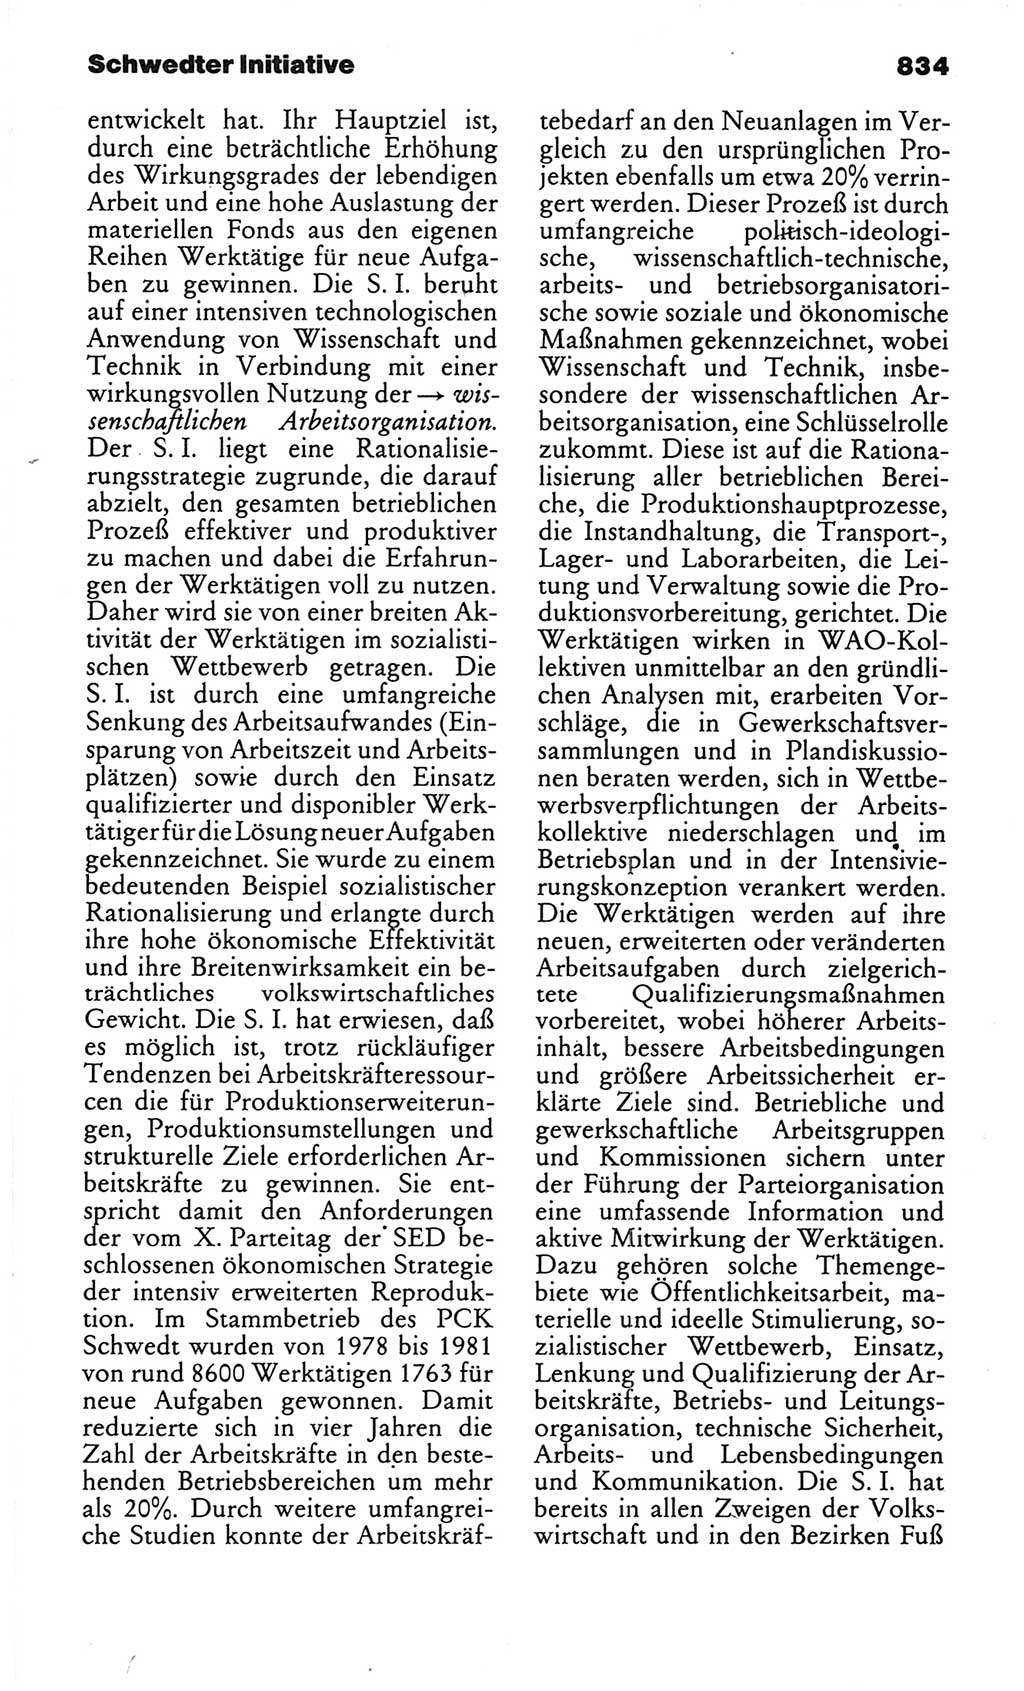 Kleines politisches Wörterbuch [Deutsche Demokratische Republik (DDR)] 1986, Seite 834 (Kl. pol. Wb. DDR 1986, S. 834)